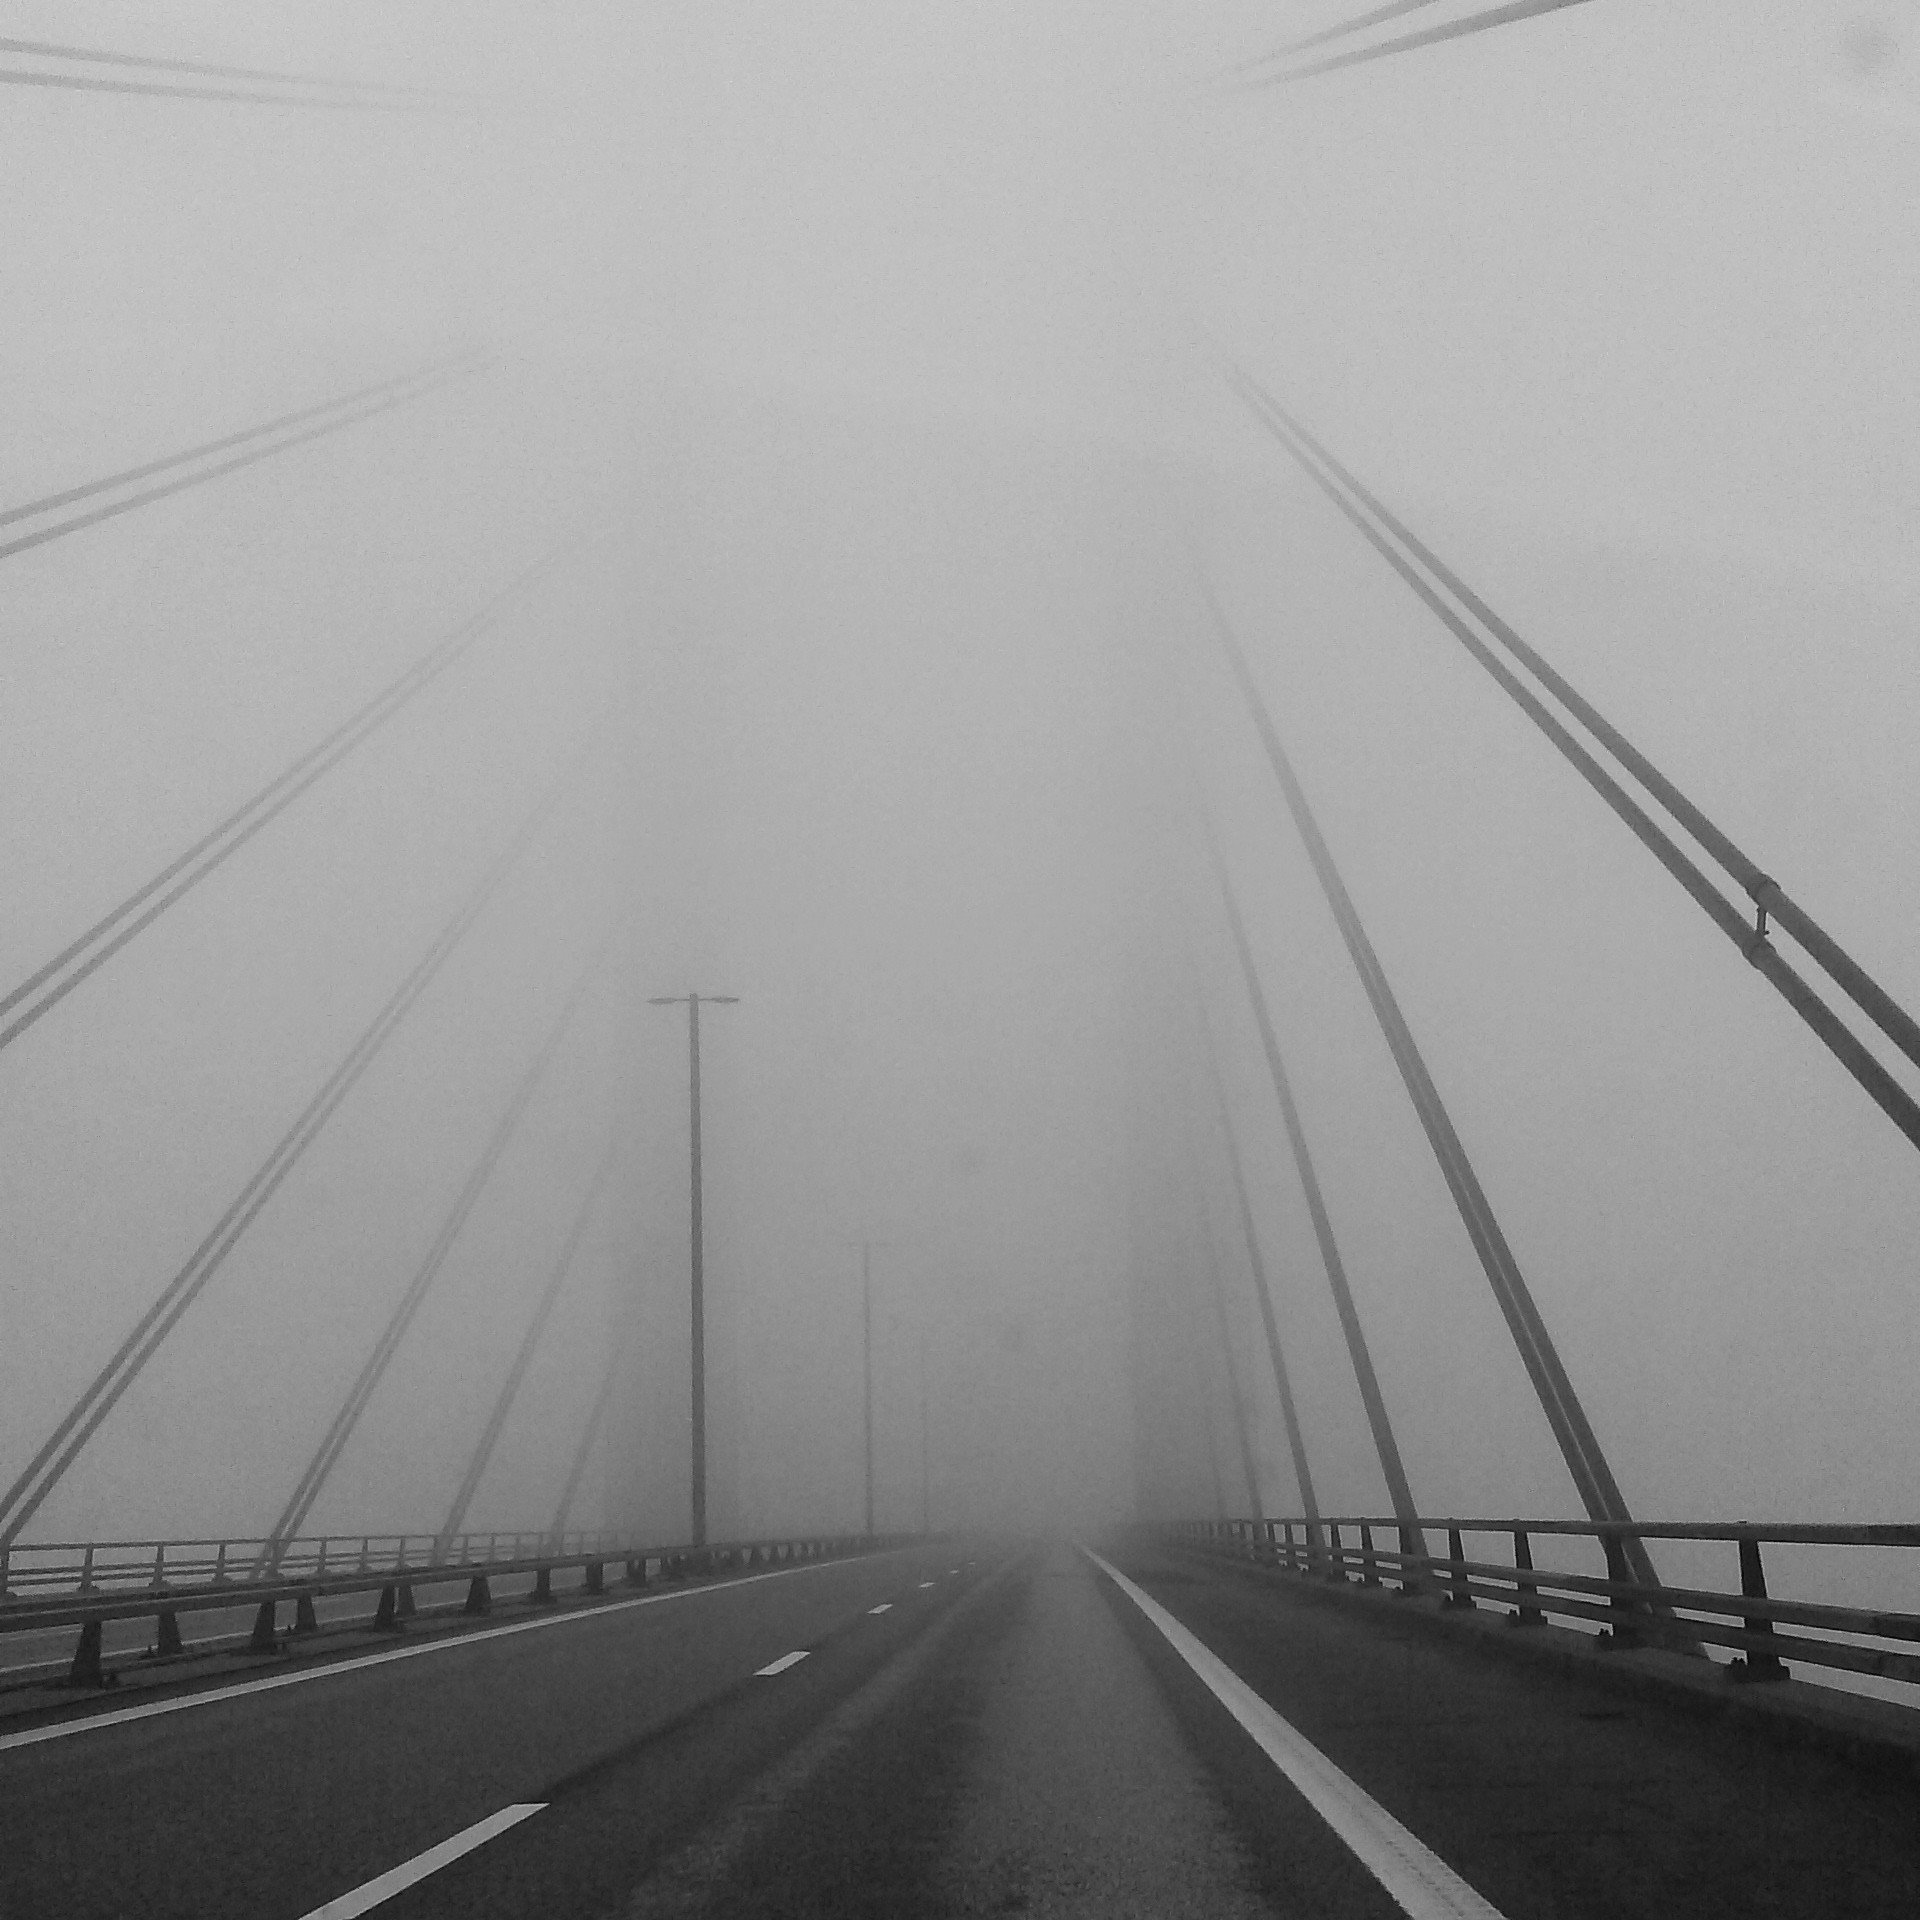 Bridge_in_fog.jpg